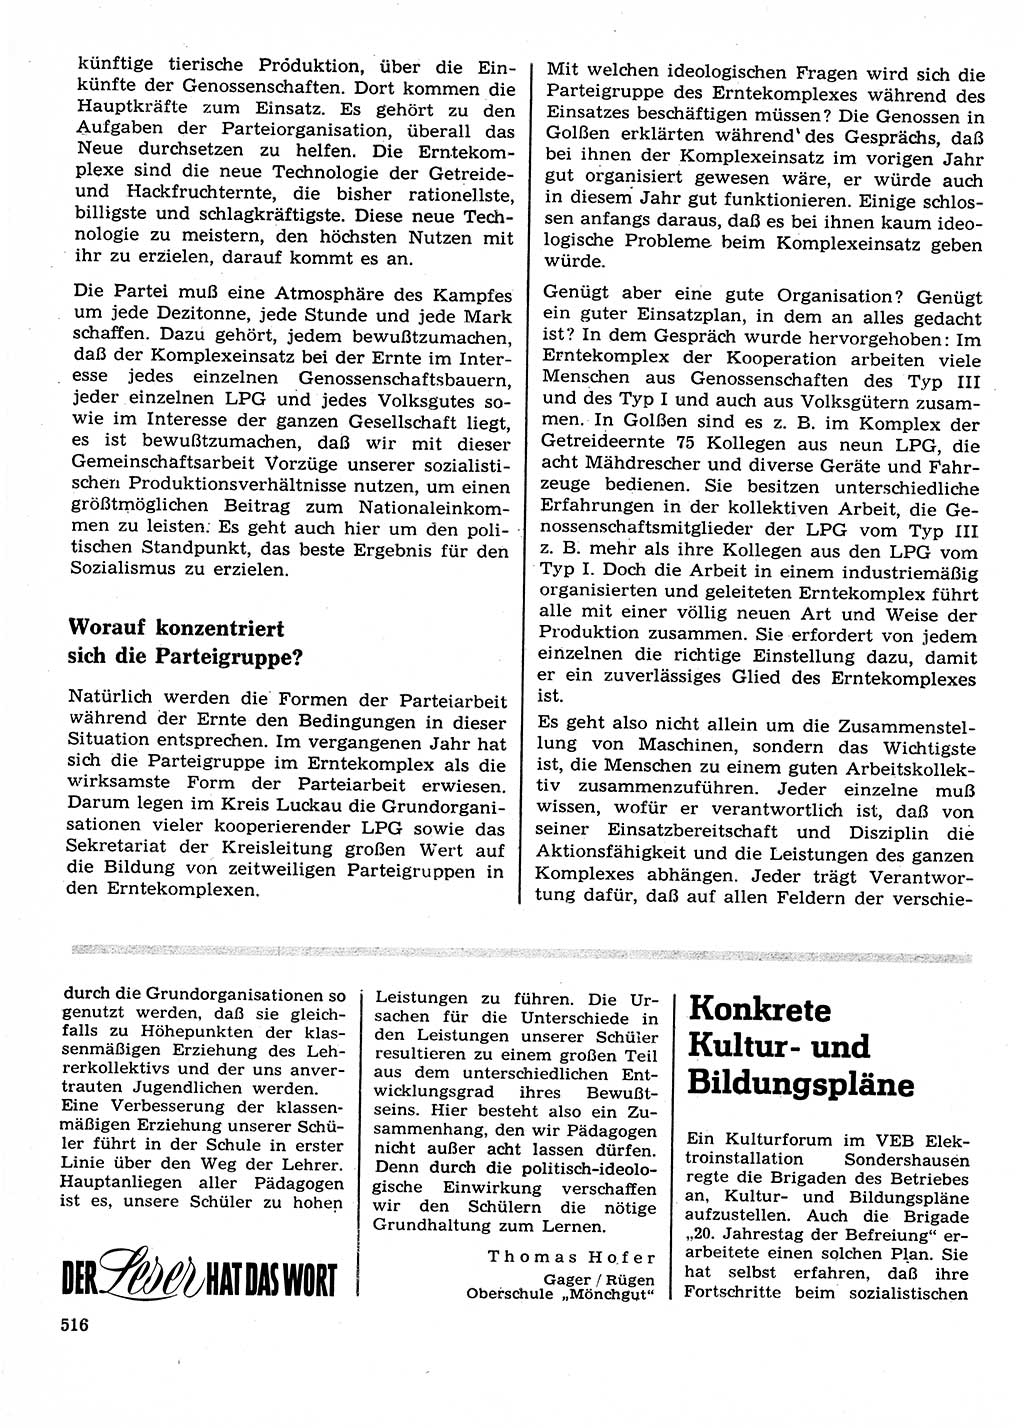 Neuer Weg (NW), Organ des Zentralkomitees (ZK) der SED (Sozialistische Einheitspartei Deutschlands) für Fragen des Parteilebens, 23. Jahrgang [Deutsche Demokratische Republik (DDR)] 1968, Seite 516 (NW ZK SED DDR 1968, S. 516)